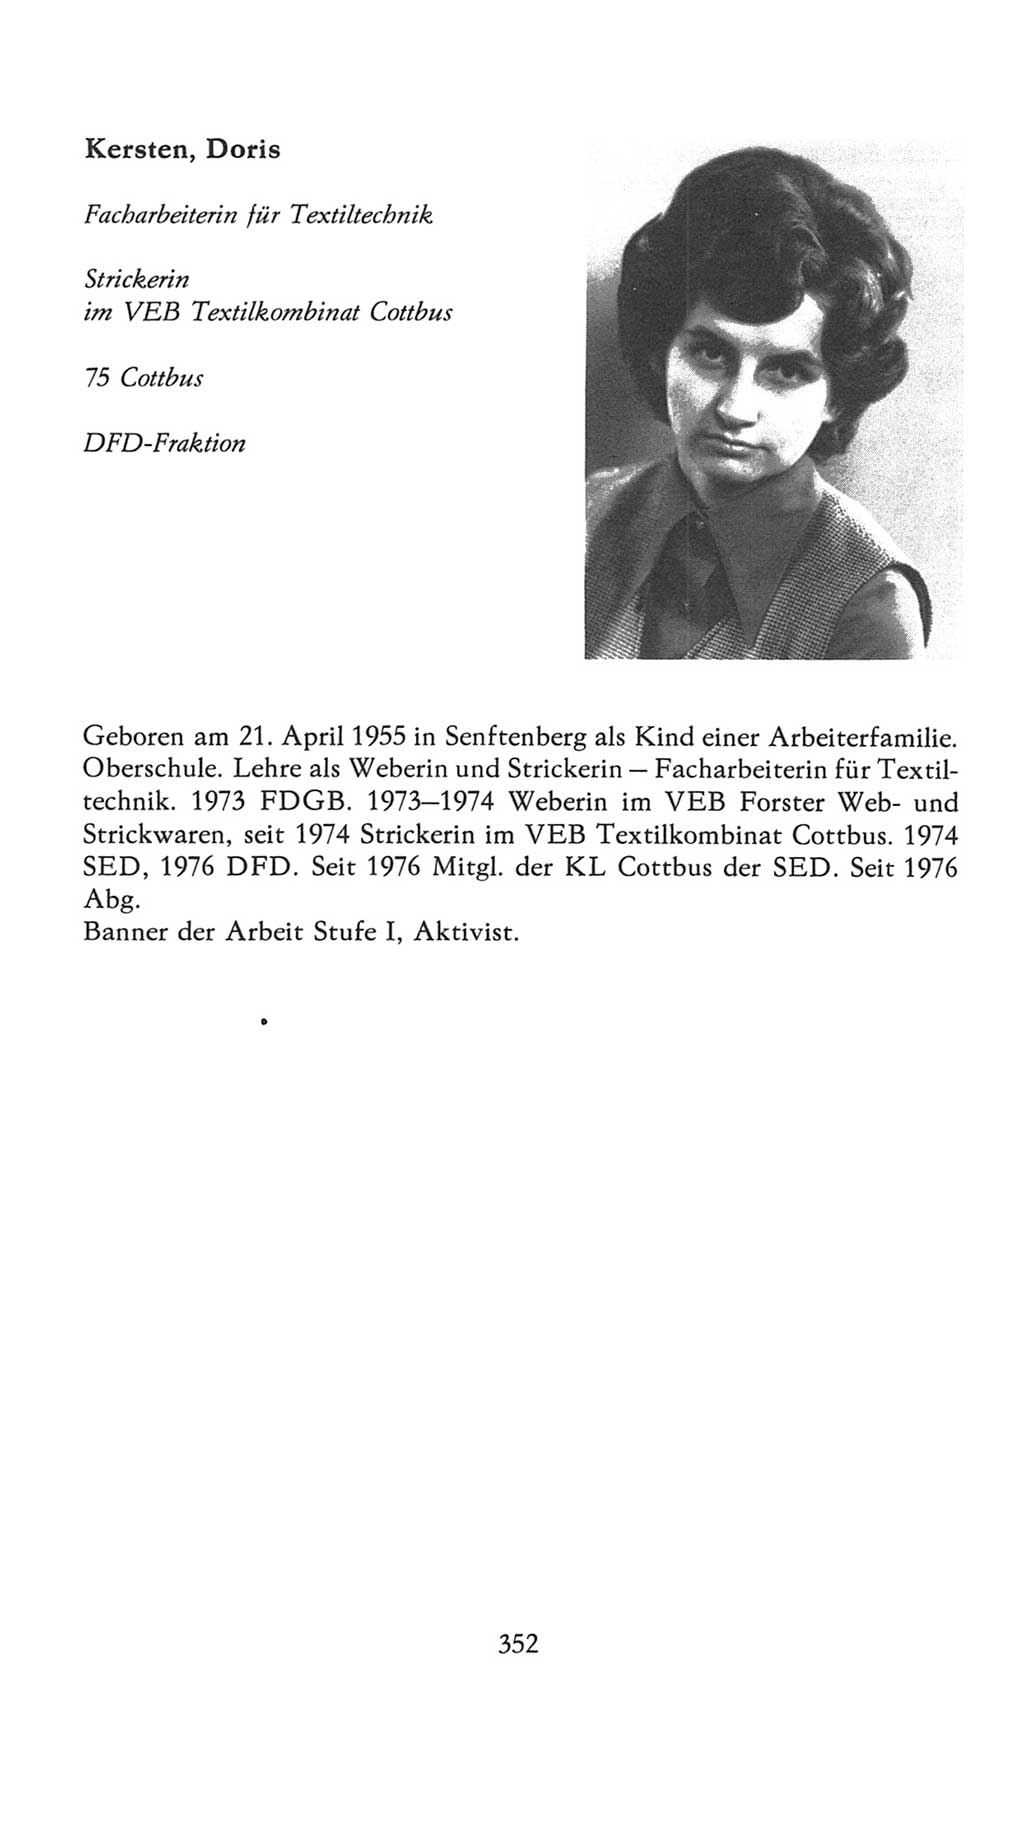 Volkskammer (VK) der Deutschen Demokratischen Republik (DDR), 7. Wahlperiode 1976-1981, Seite 352 (VK. DDR 7. WP. 1976-1981, S. 352)